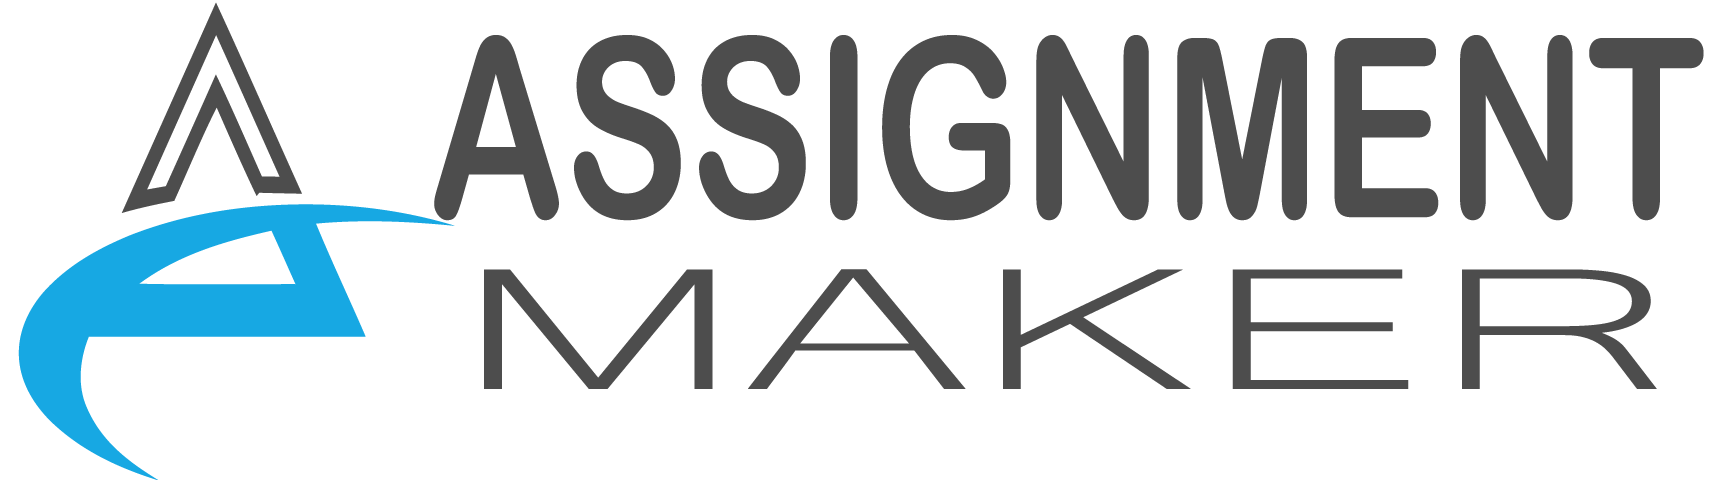 assignment maker logo